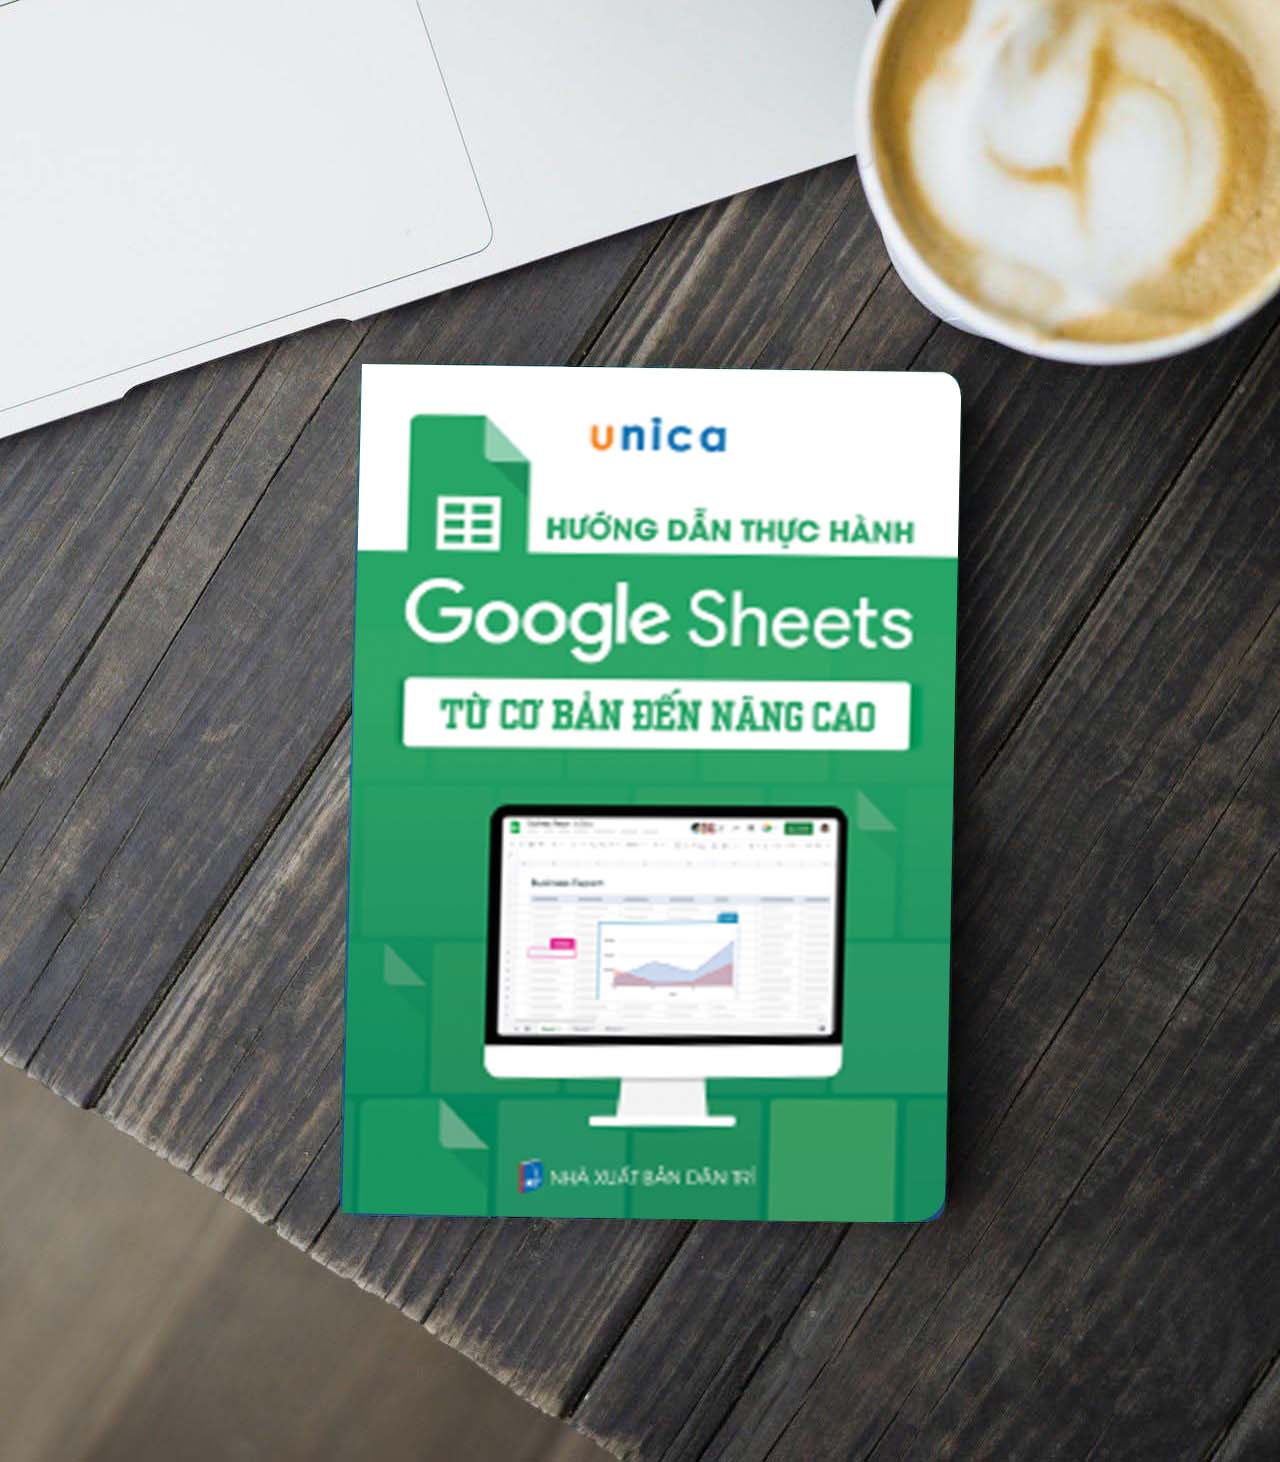 Combo 3 Sách Word - Excel - Google Sheet Tin học văn phòng Unica, Hướng dẫn thực hành từ cơ bản đến nâng cao, in màu chi tiết, TẶNG video bài giảng